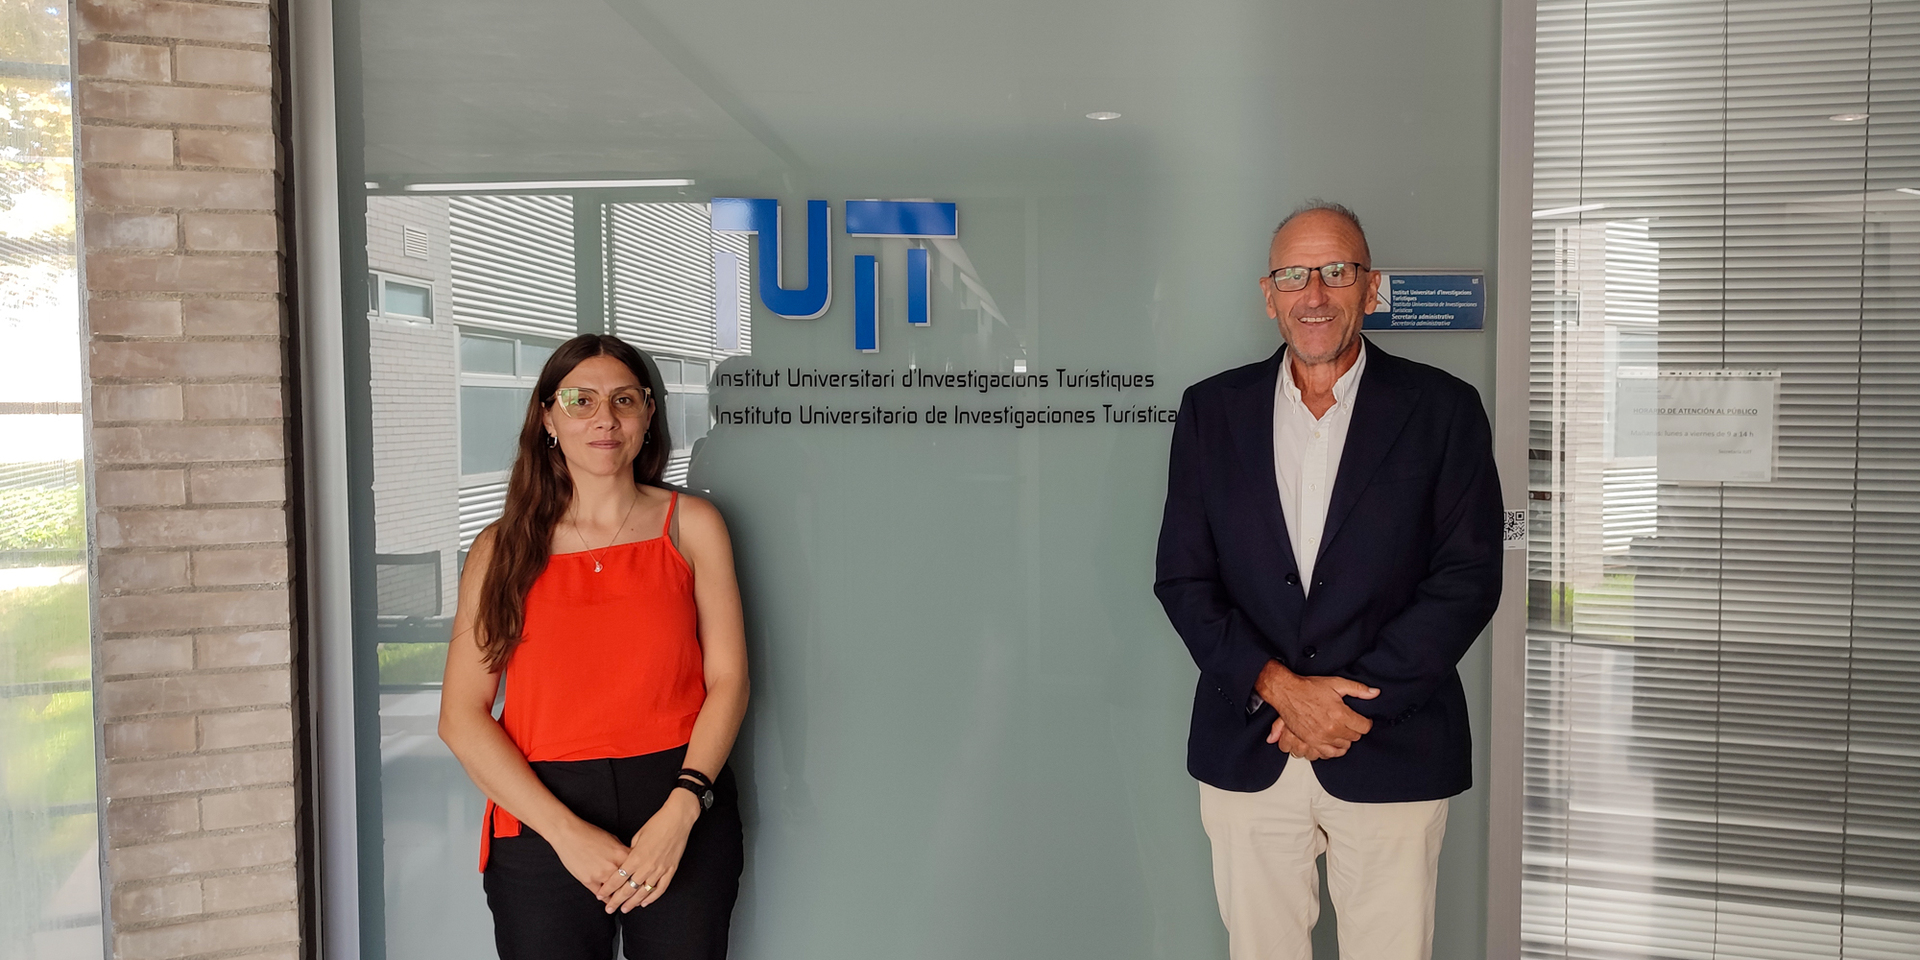 Convenio entre nuestro Instituto de Investigaciones en Turismo y el Instituto Universitario de Investigaciones Turísticas de la Universidad de Alicante